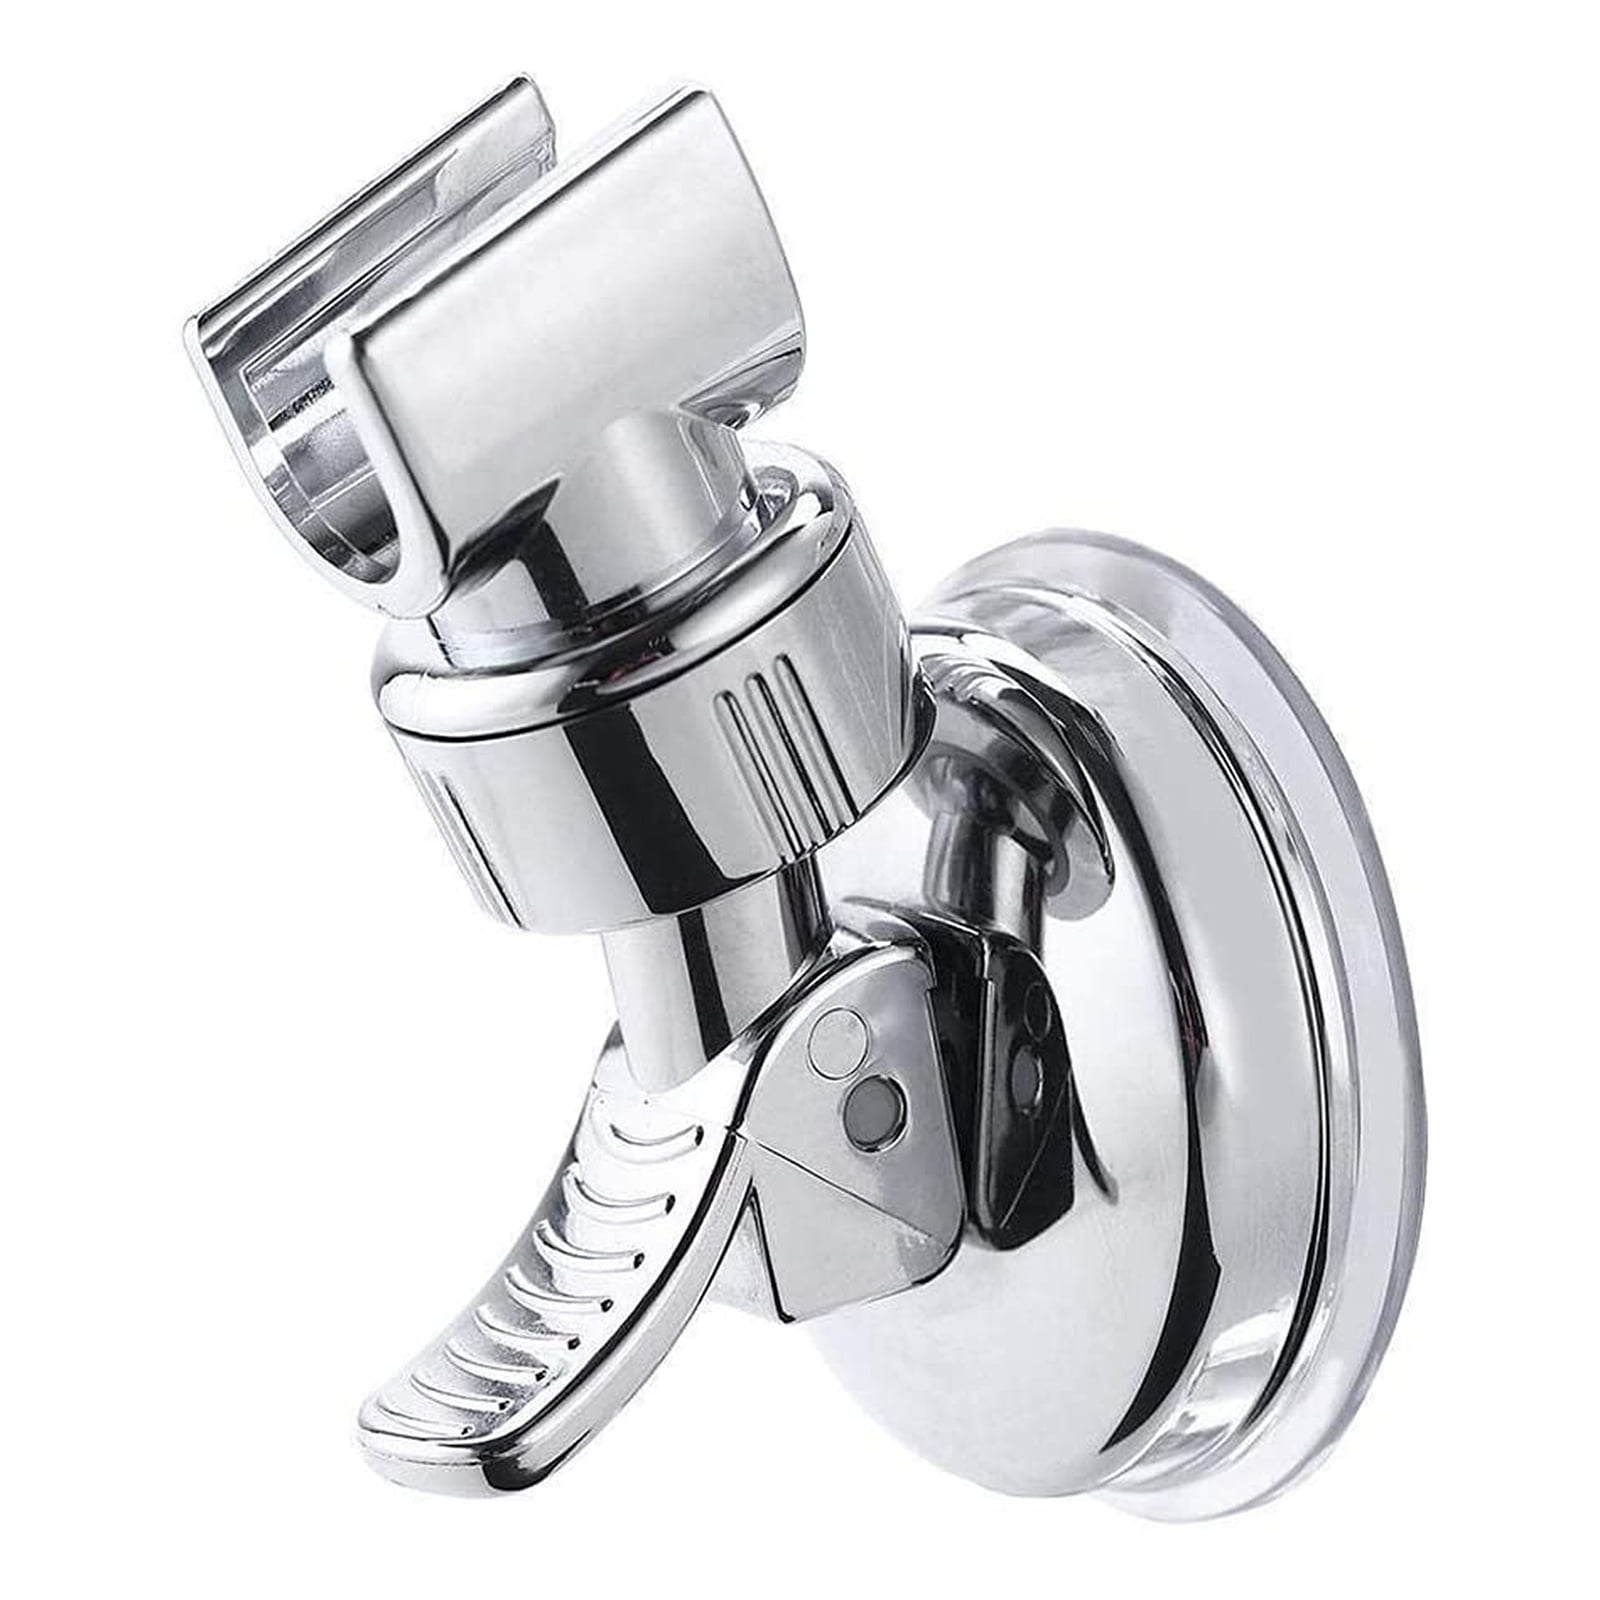 Bathroom Adjustable Shower Head Holder Suction Cup Style Handheld Shower Holder 